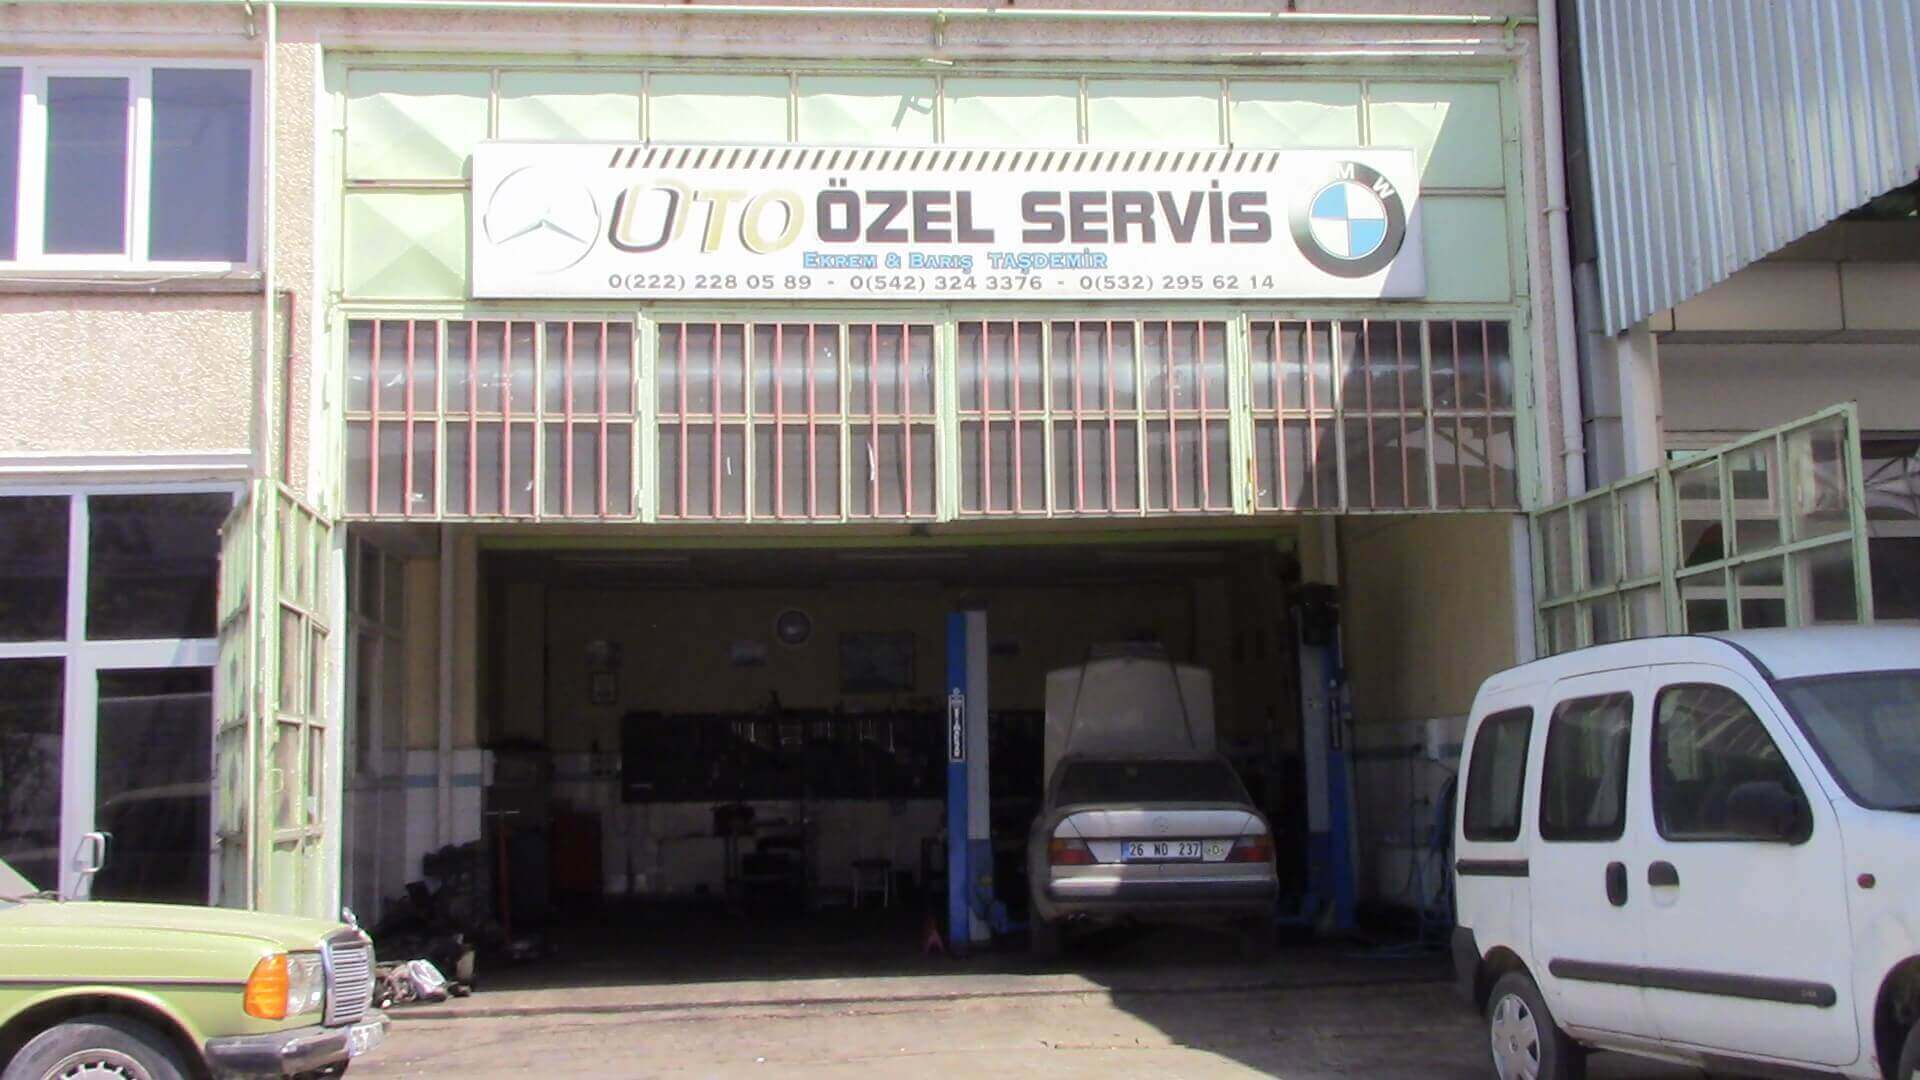 Eskişehir Oto Özel - BMW - Mercedes Özel Servis | Eskişehir Oto